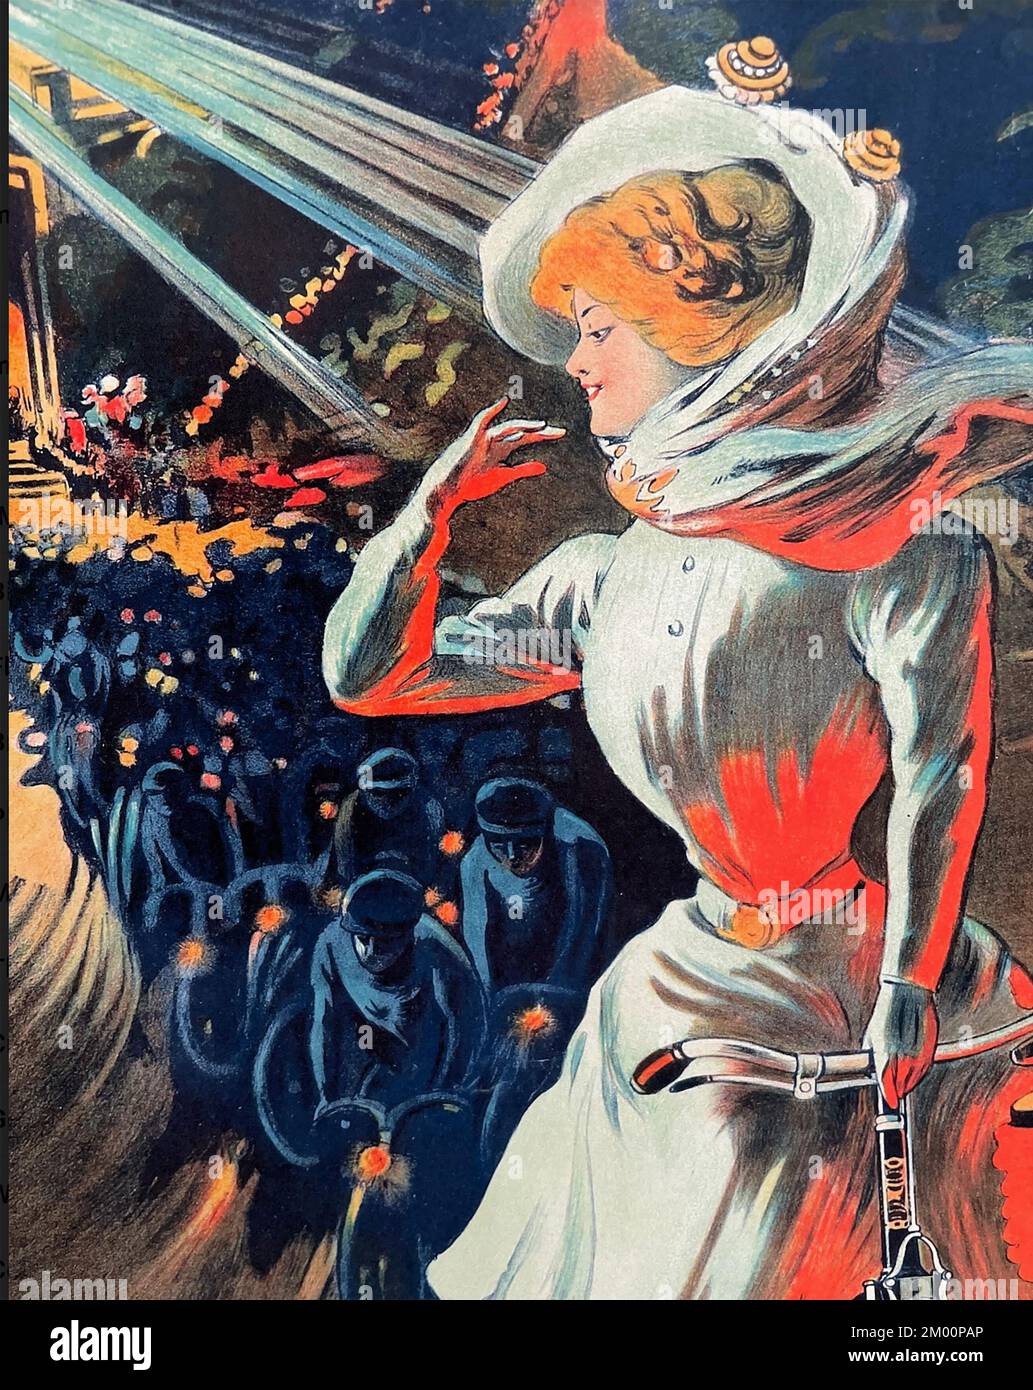 VÉLO ENVIRON 1900. Section d'une affiche pour la compagnie cycliste française Terrot montre une dame qui dirige un courant de cyclistes de nuit sur les champs Elysées. Banque D'Images